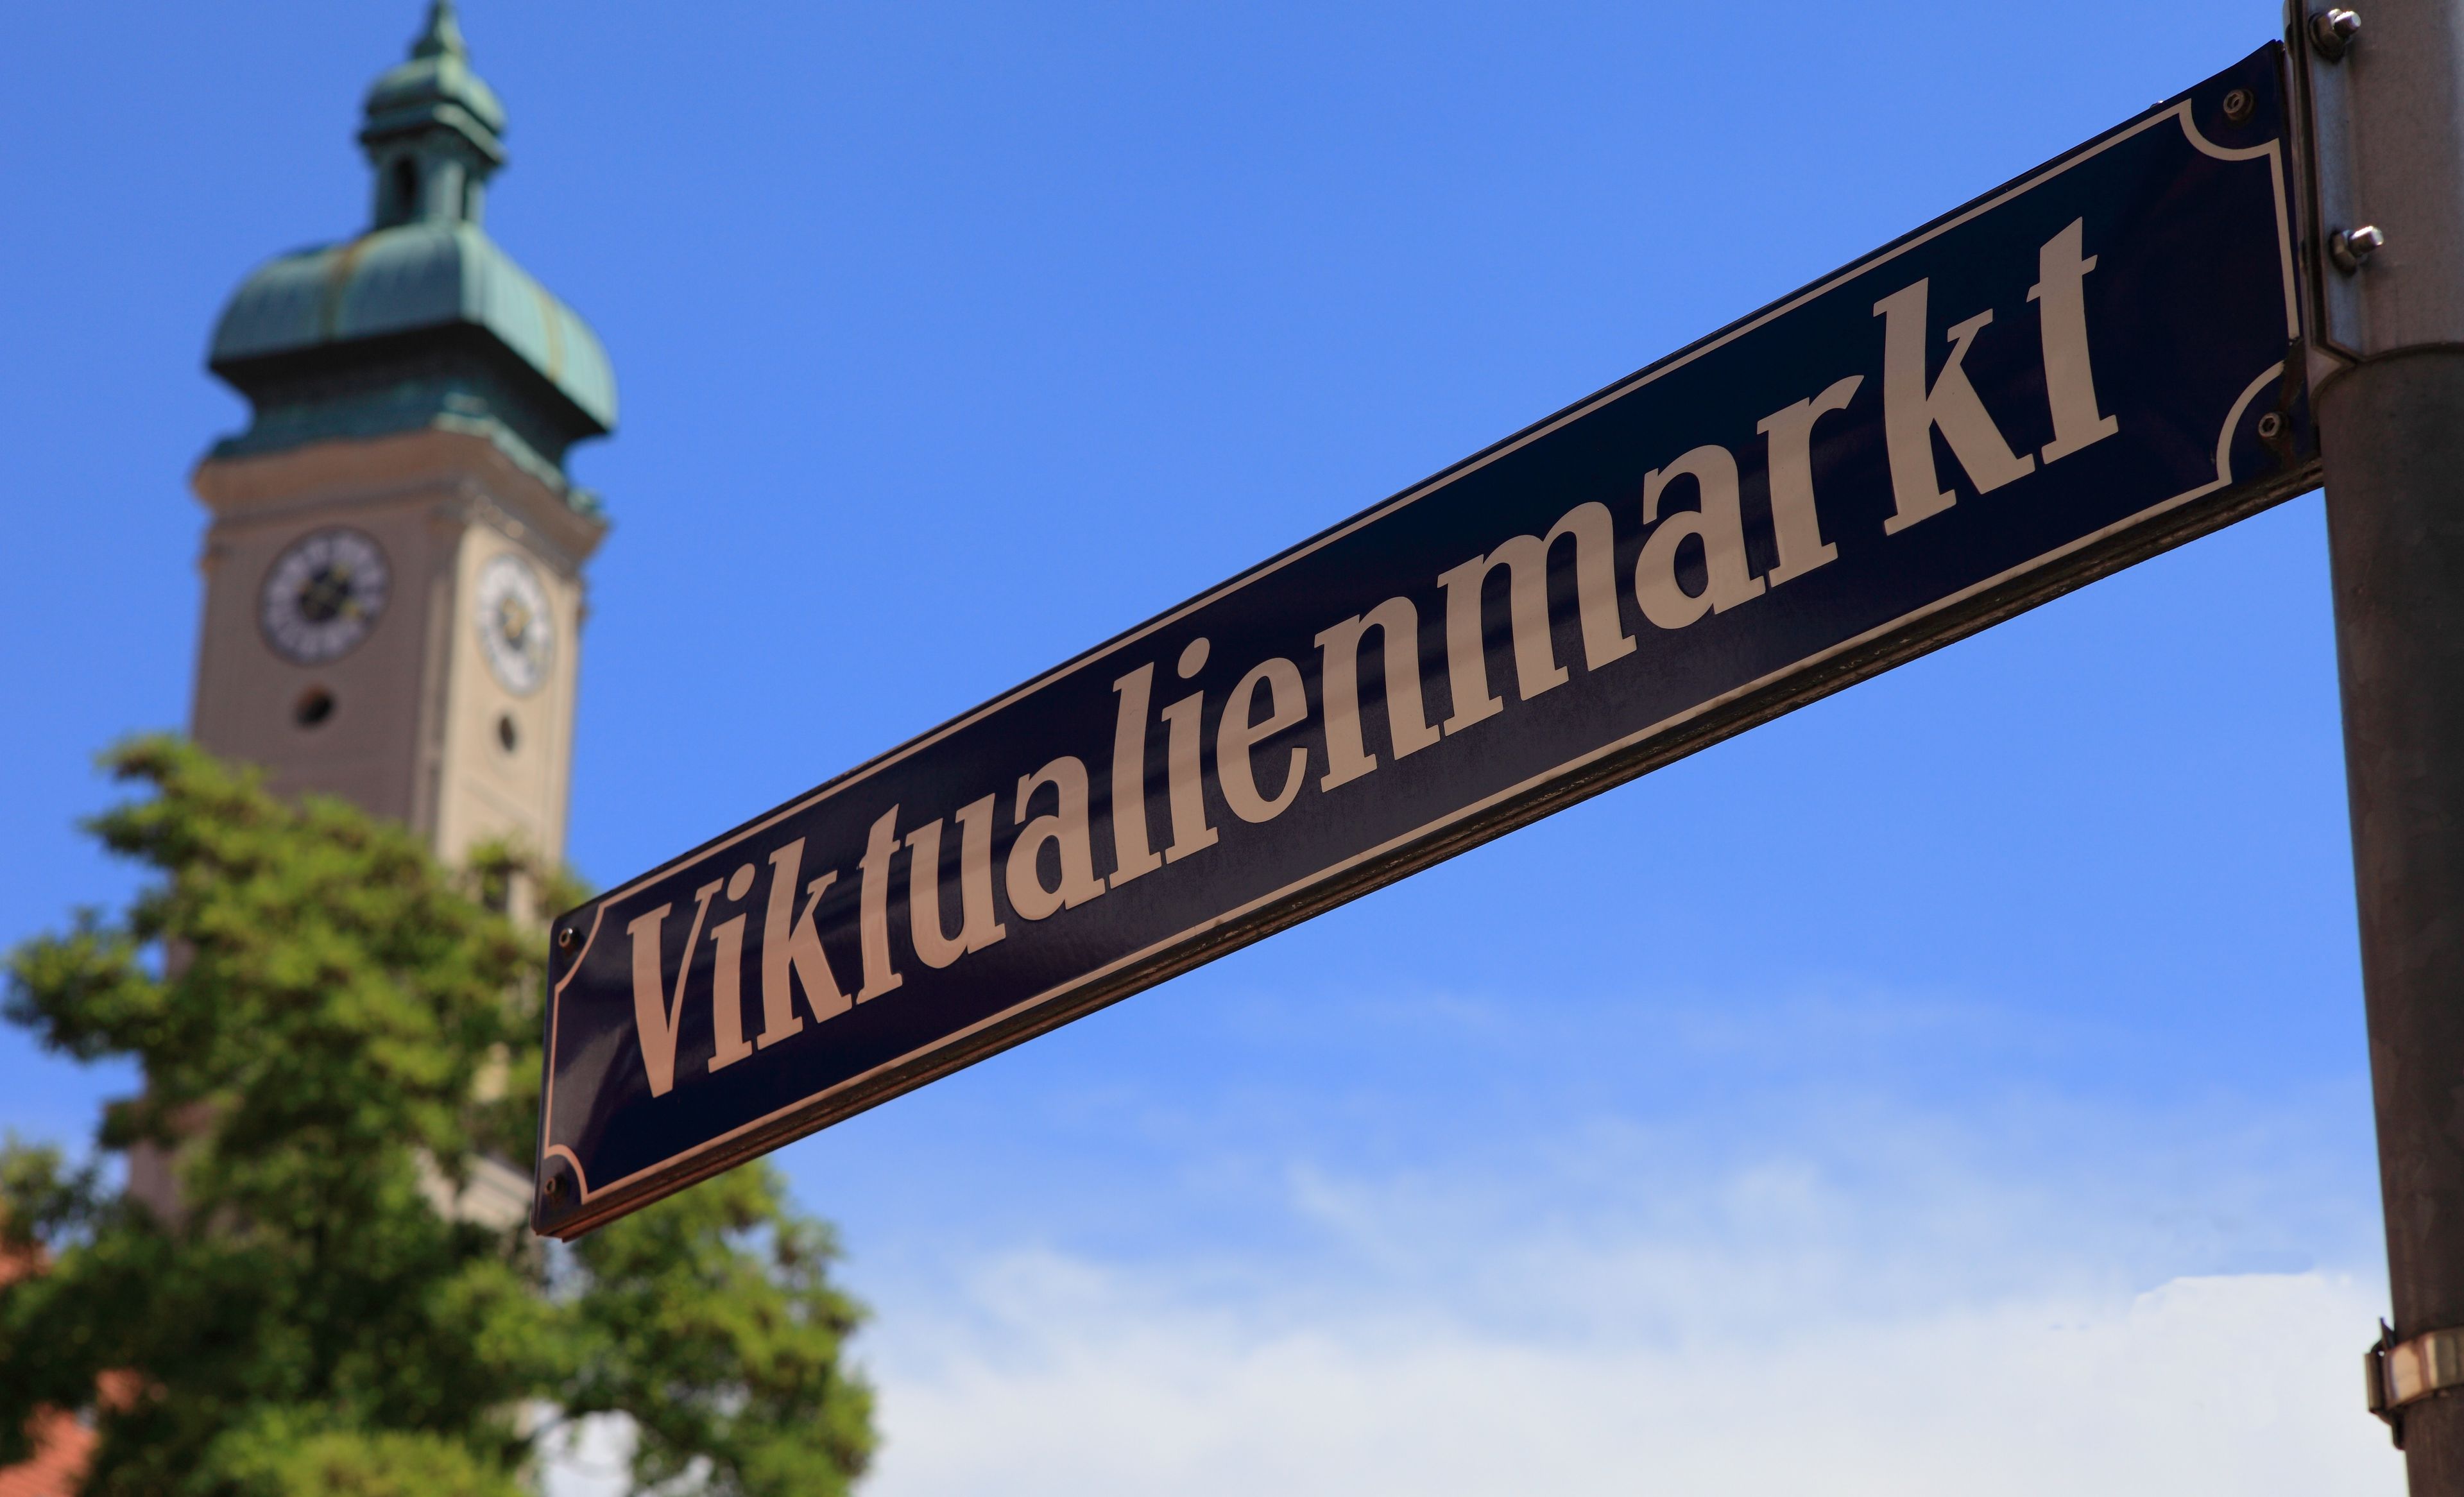 Skylt till "Viktualienmarkt" i Münchens gamla stad